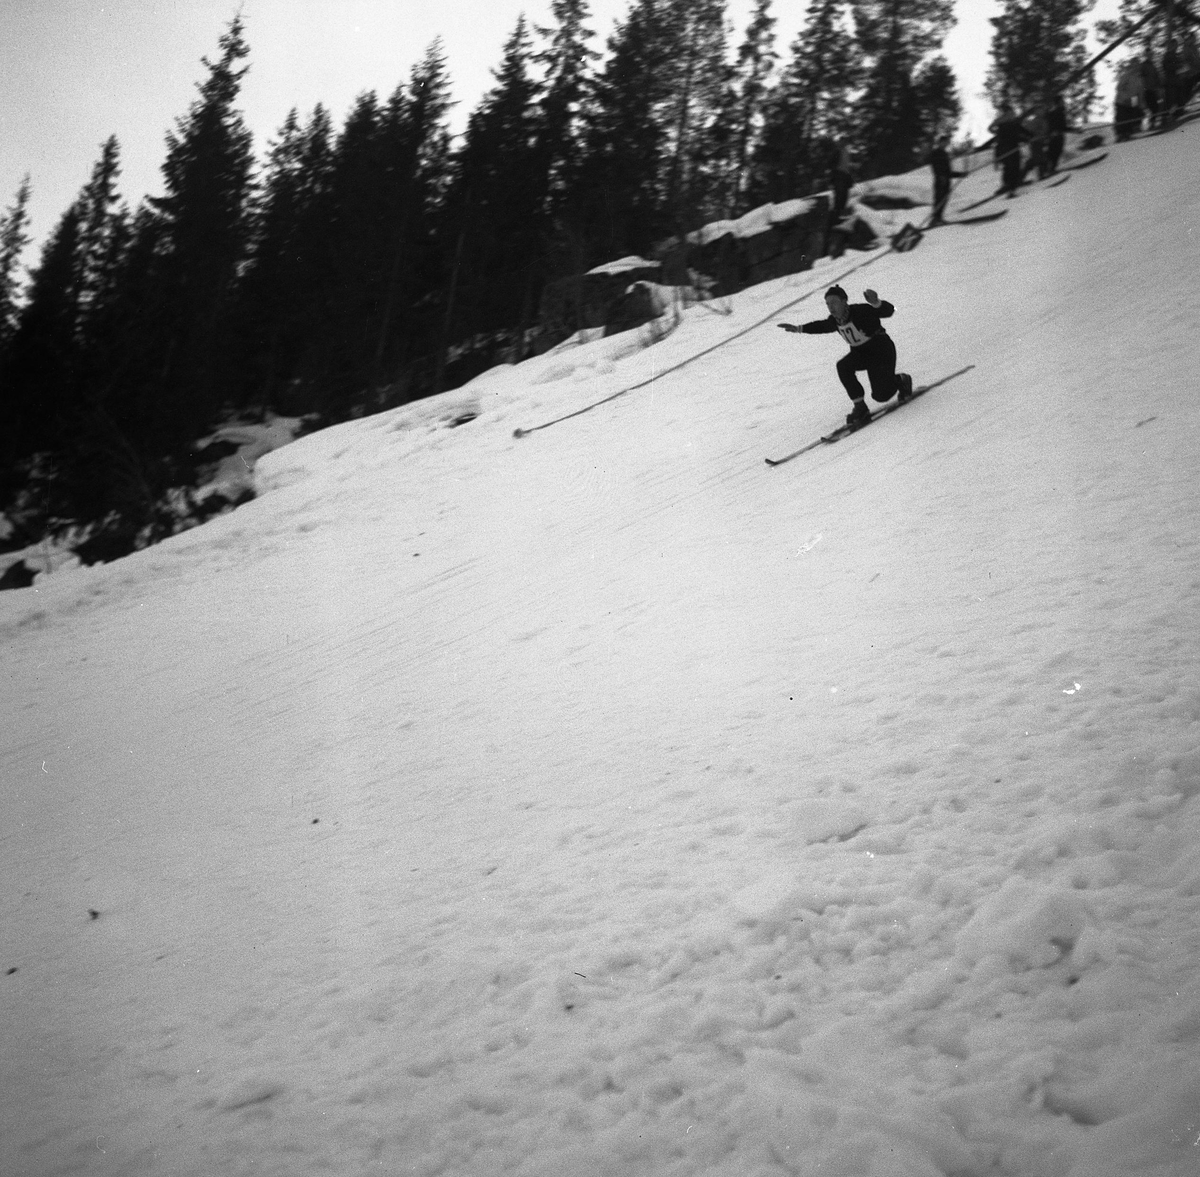 Kongsberg skier Svein Lien in action